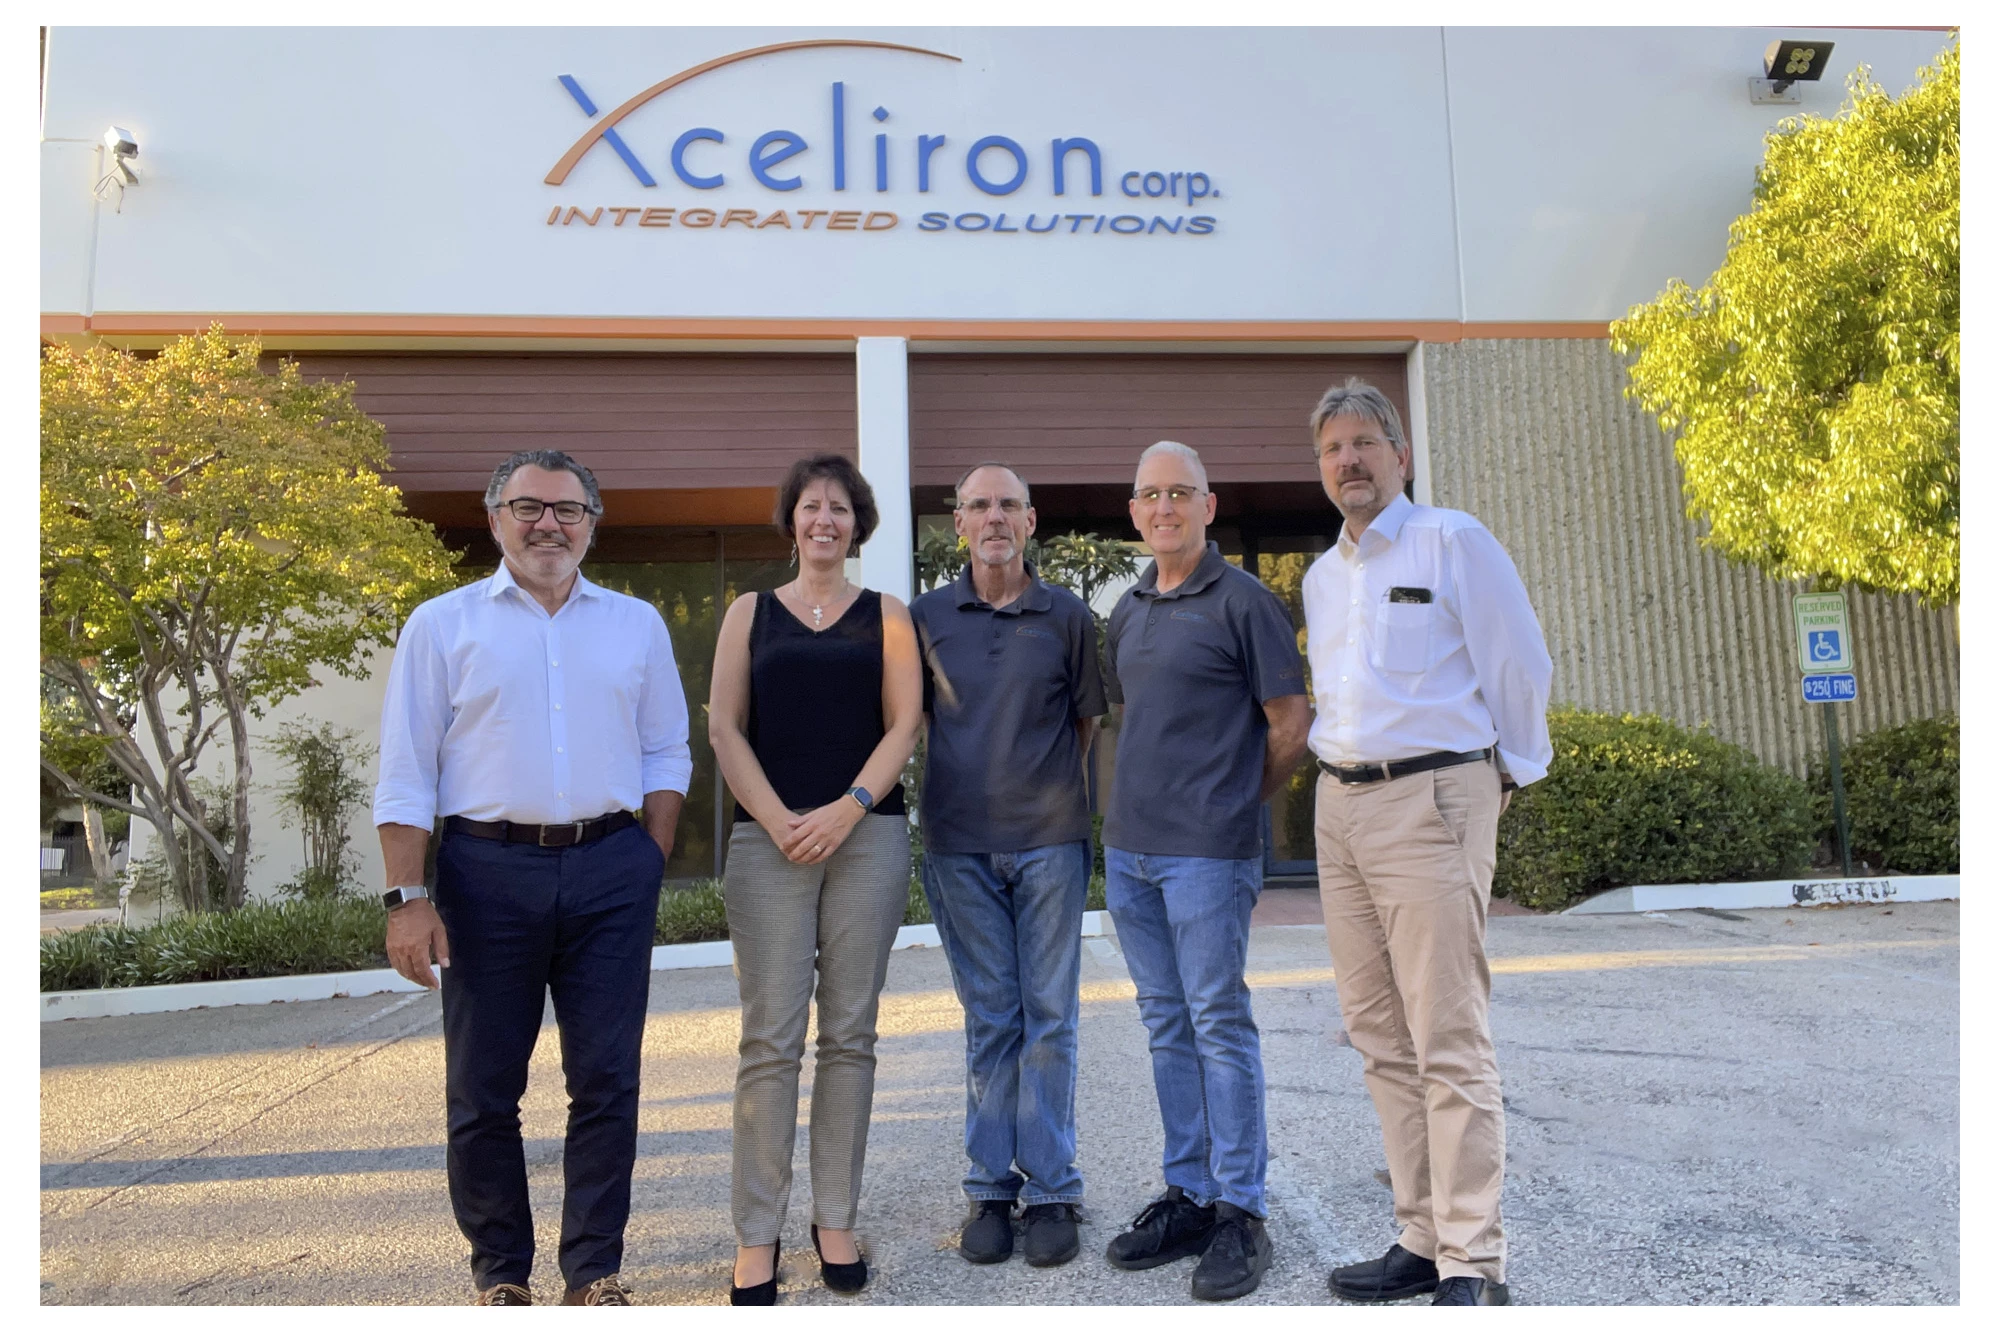 CERATIZIT acquires Xceliron Corp.